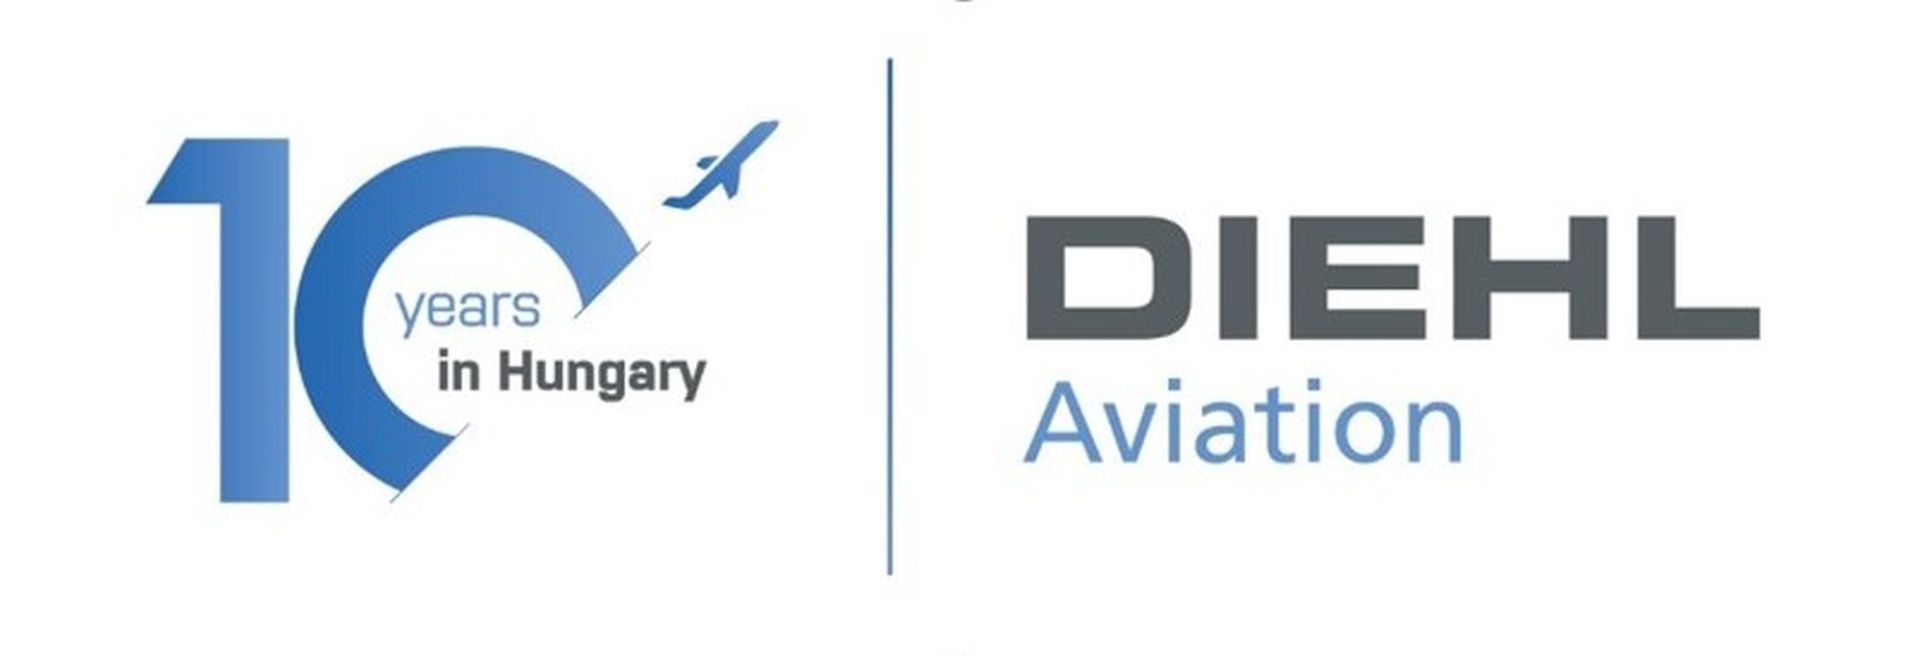 Új gyártócsarnokkal ünnepli a Diehl Aviation tíz éves magyarországi jelenlétét